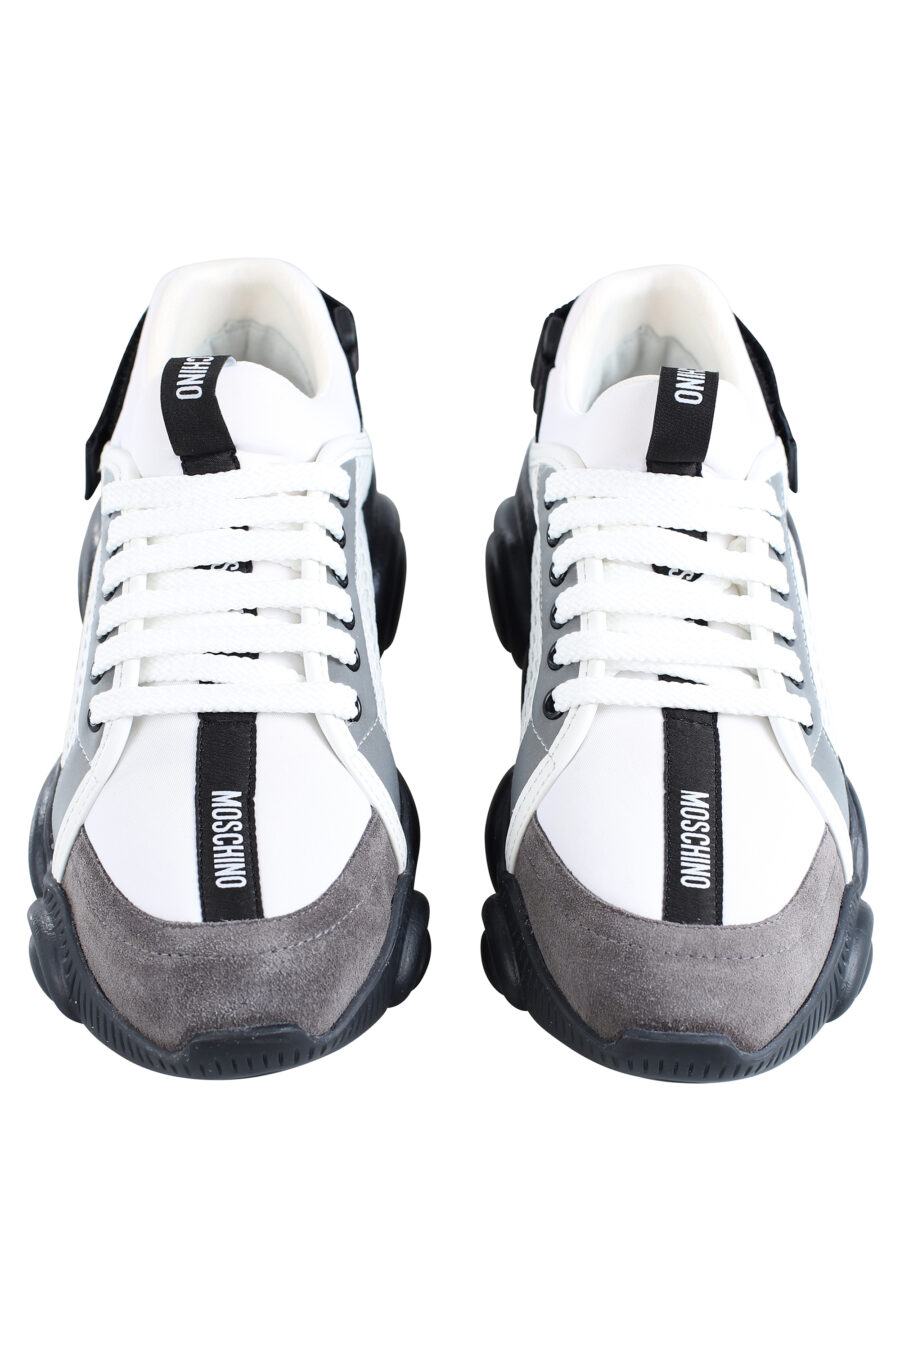 Zapatillas mix blancas con reflector y logo en velcro - IMG 2015